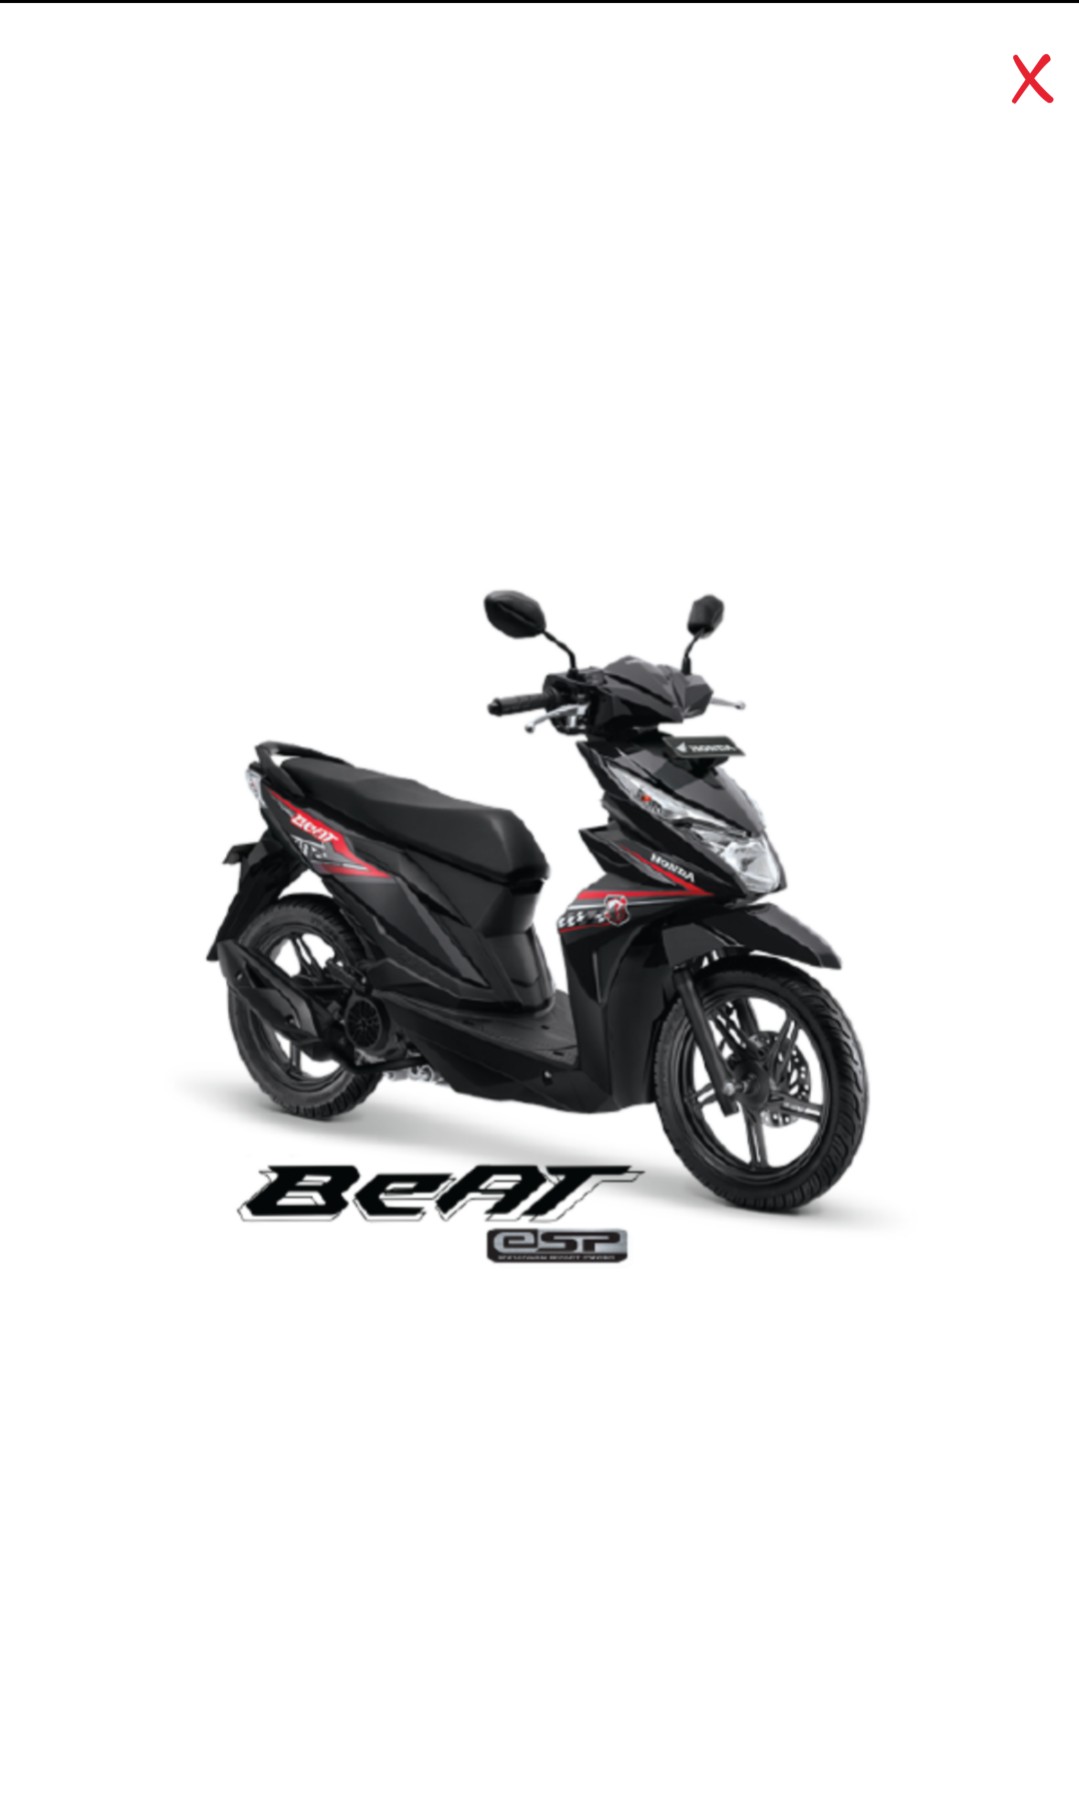 Sepeda Motor Honda Beat Terbaru - impremedia.net